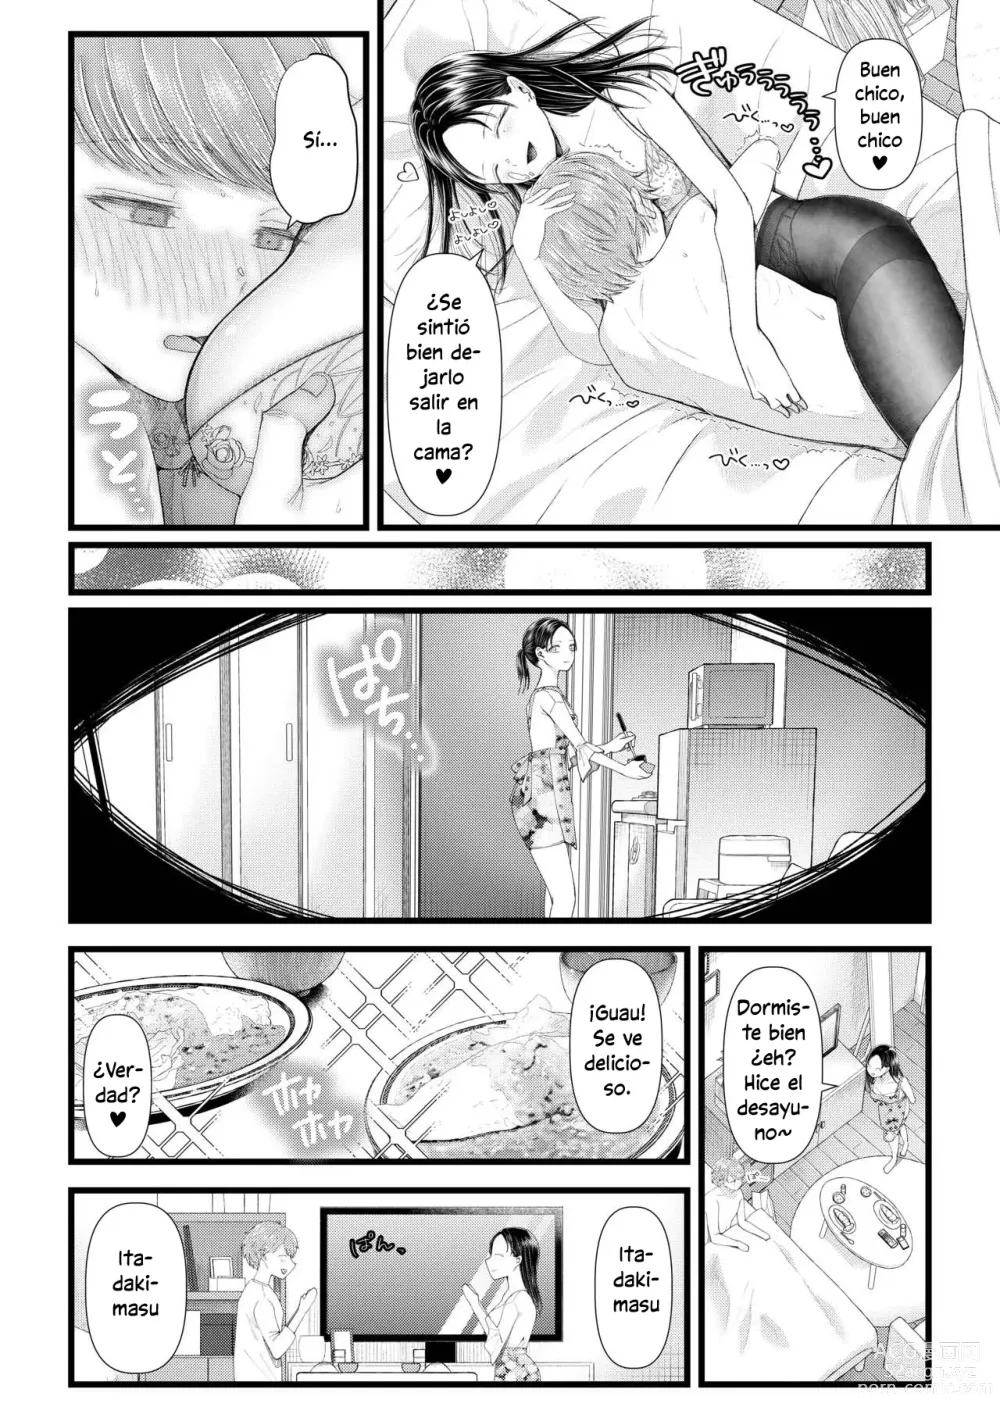 Page 11 of doujinshi My Boyfriend is a Masochist: Leg Fetish, Birthday Edition